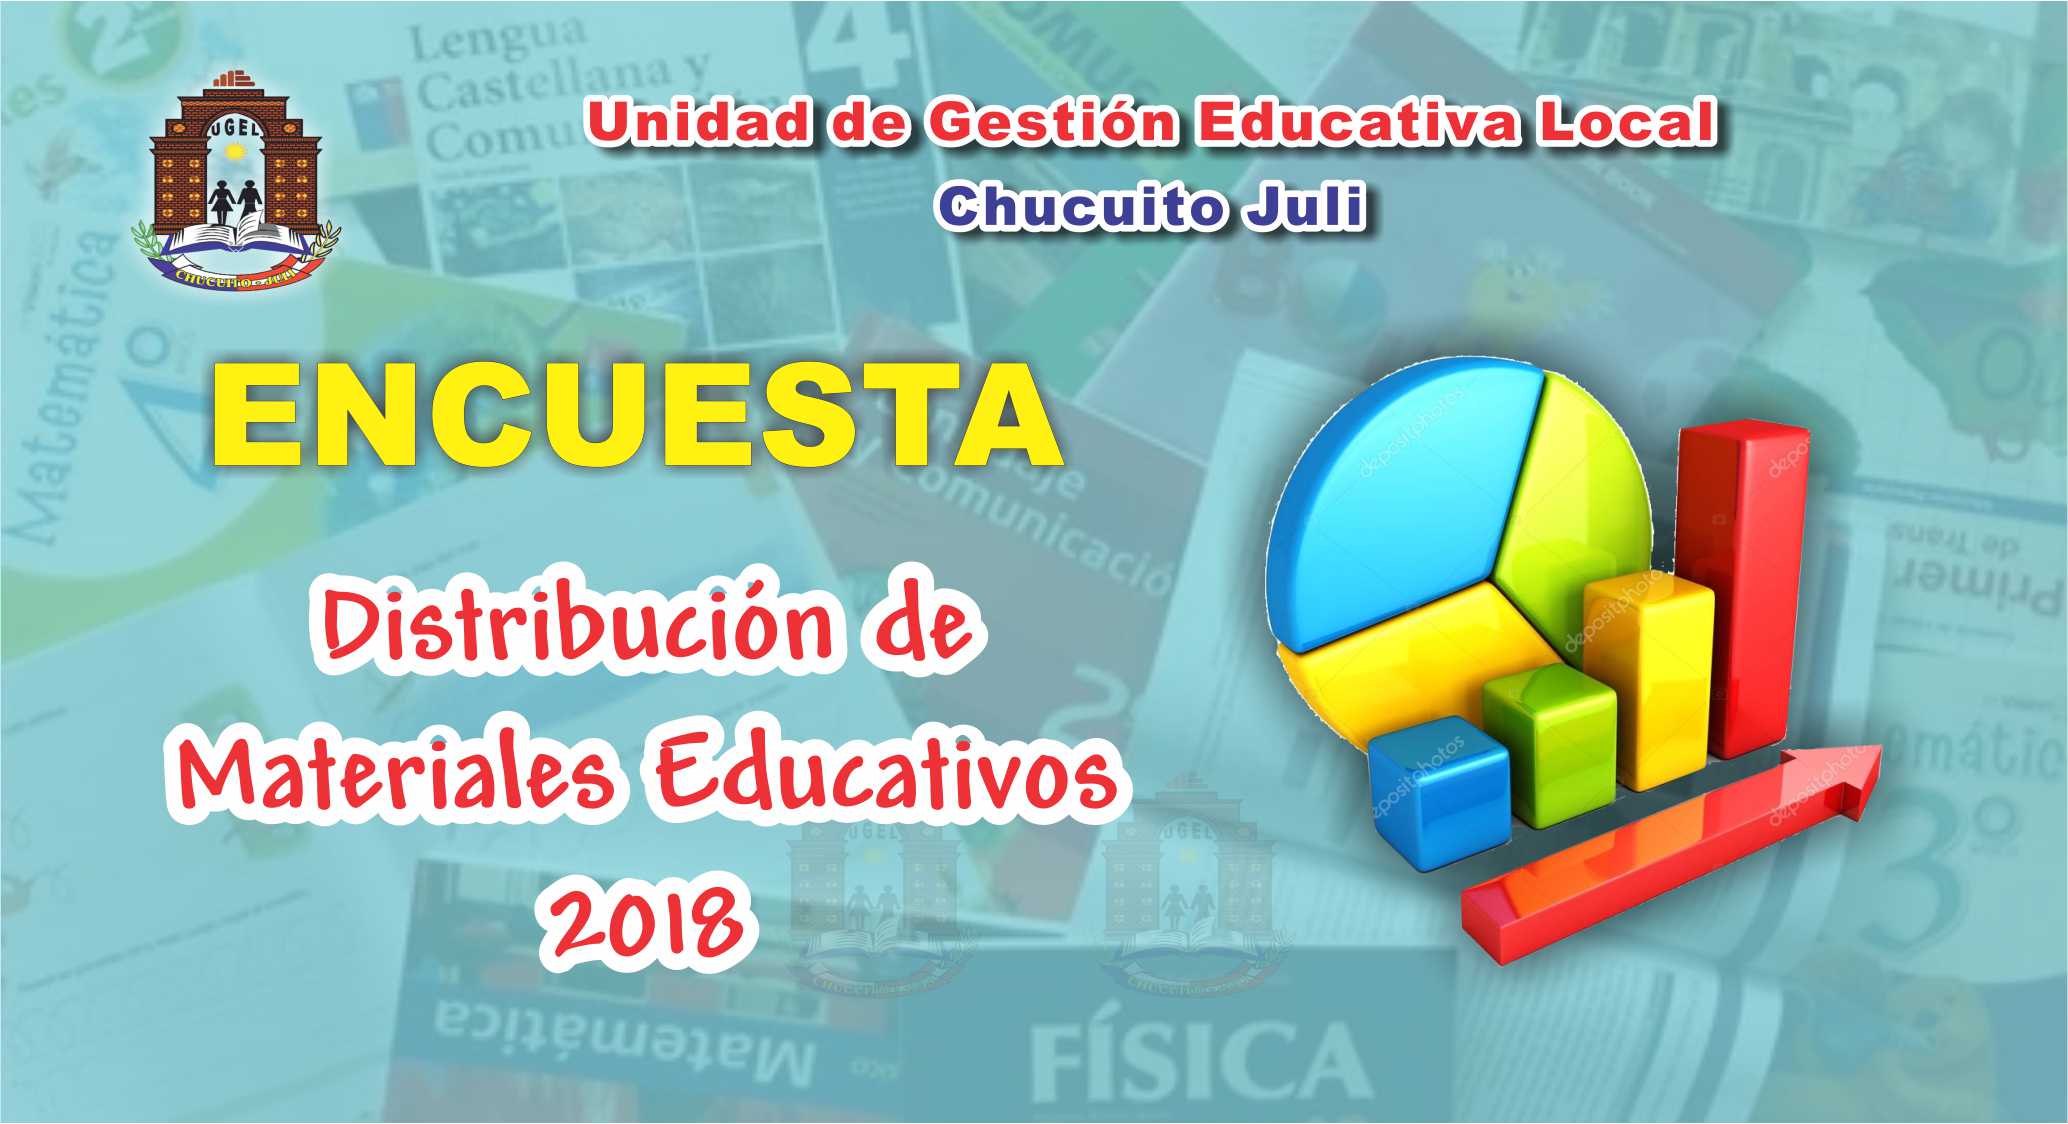 ENCUESTA A DIRECTORES: MATERIALES EDUCATIVOS 2018